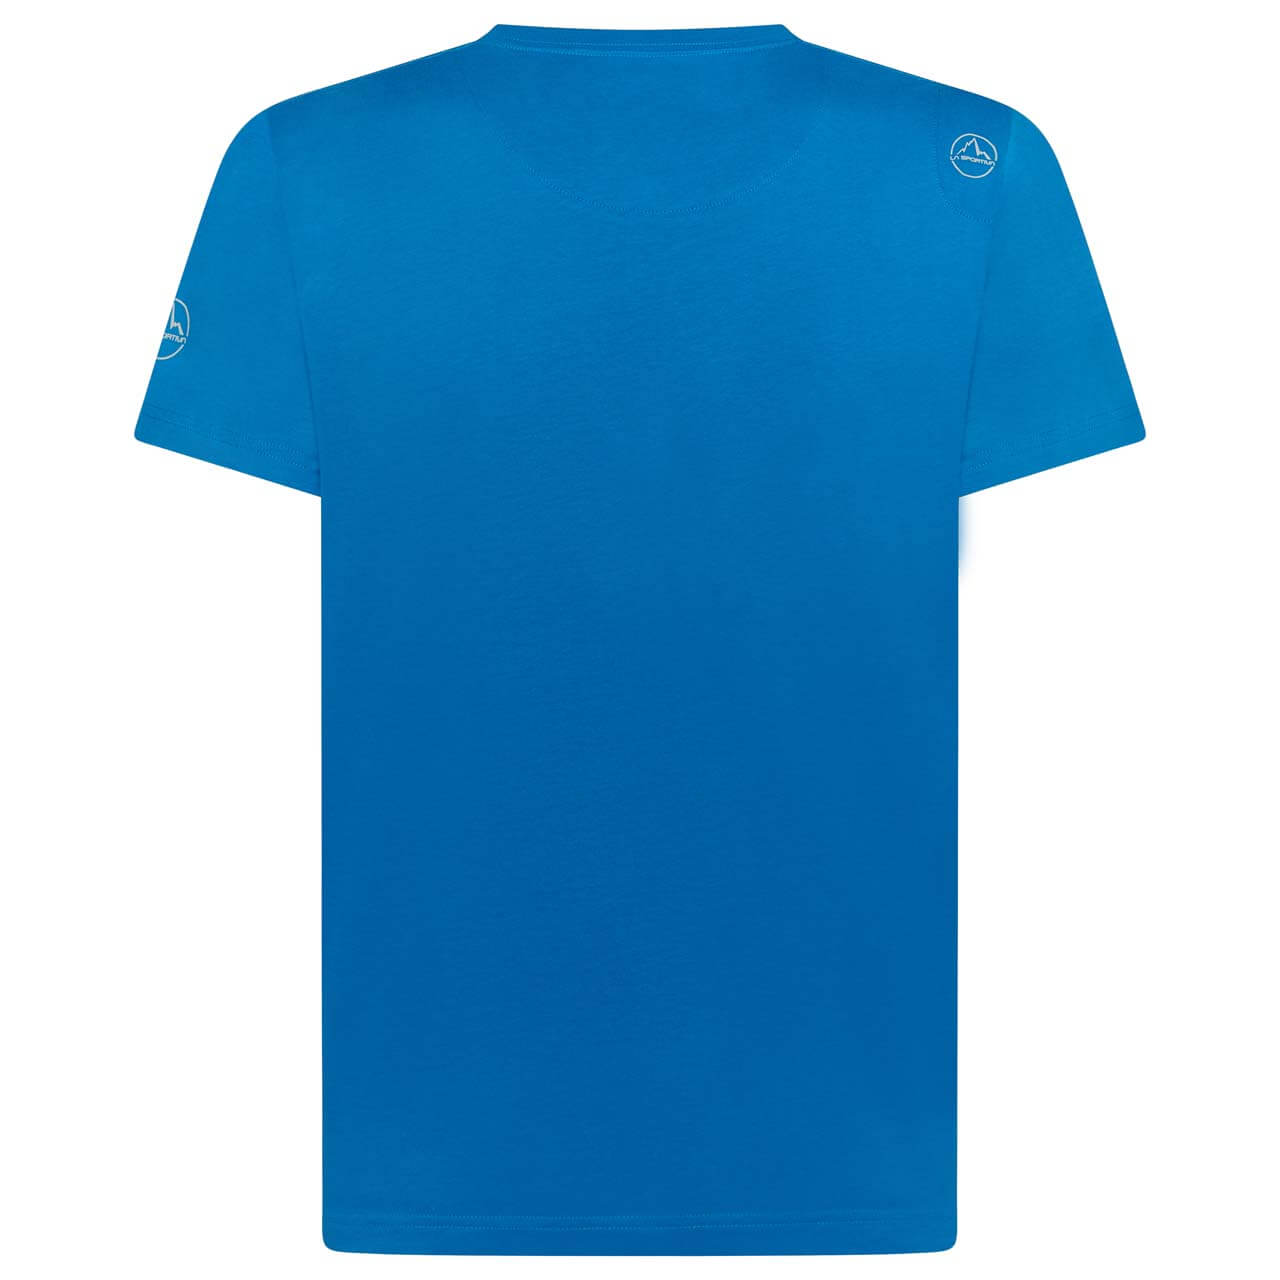 La Sportiva Breakfast T-Shirt - Neptune, S